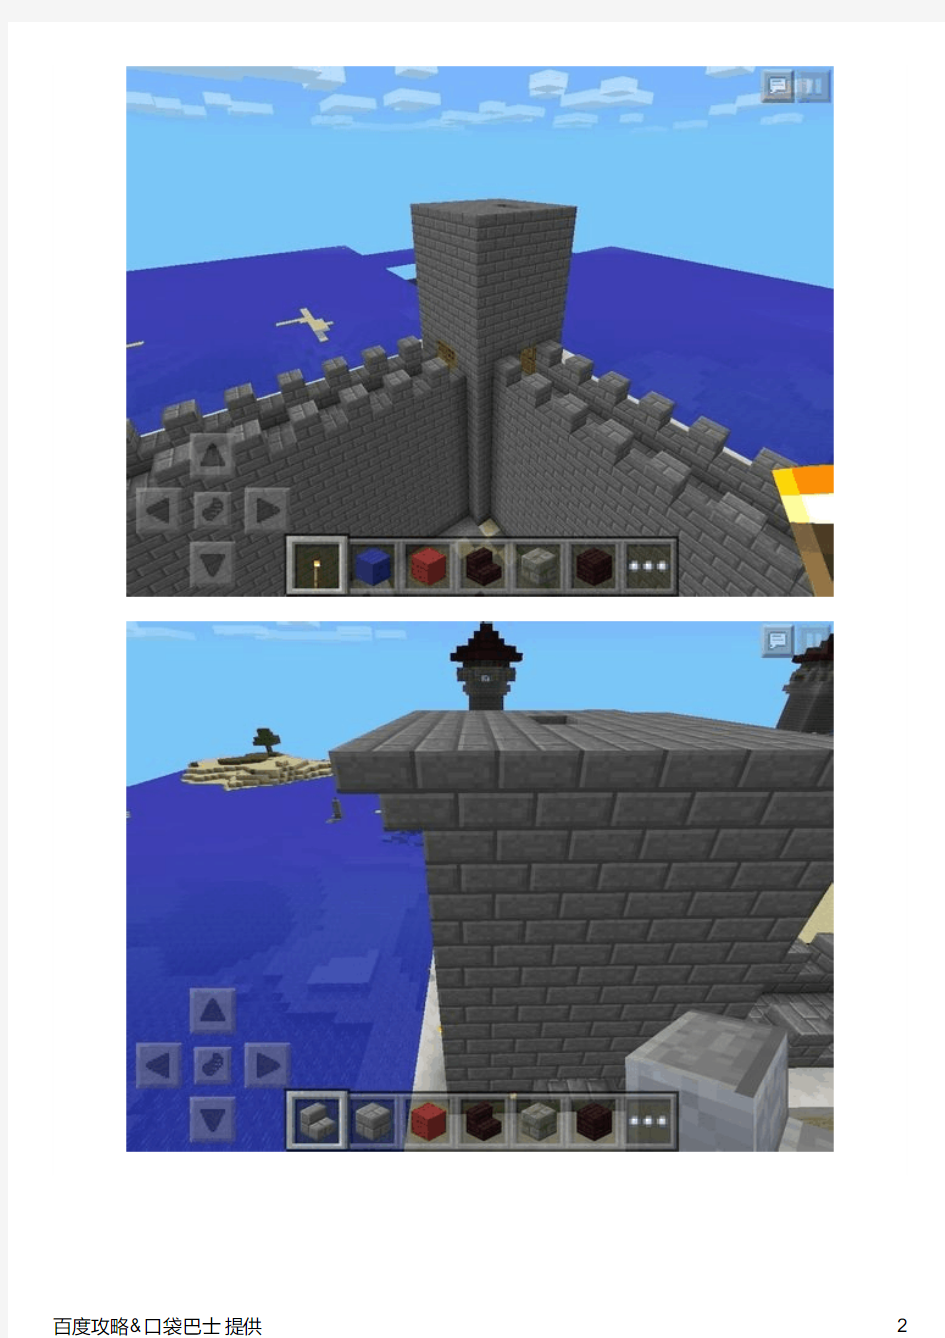 简单又美观!Minecraft我的世界城堡教程攻略